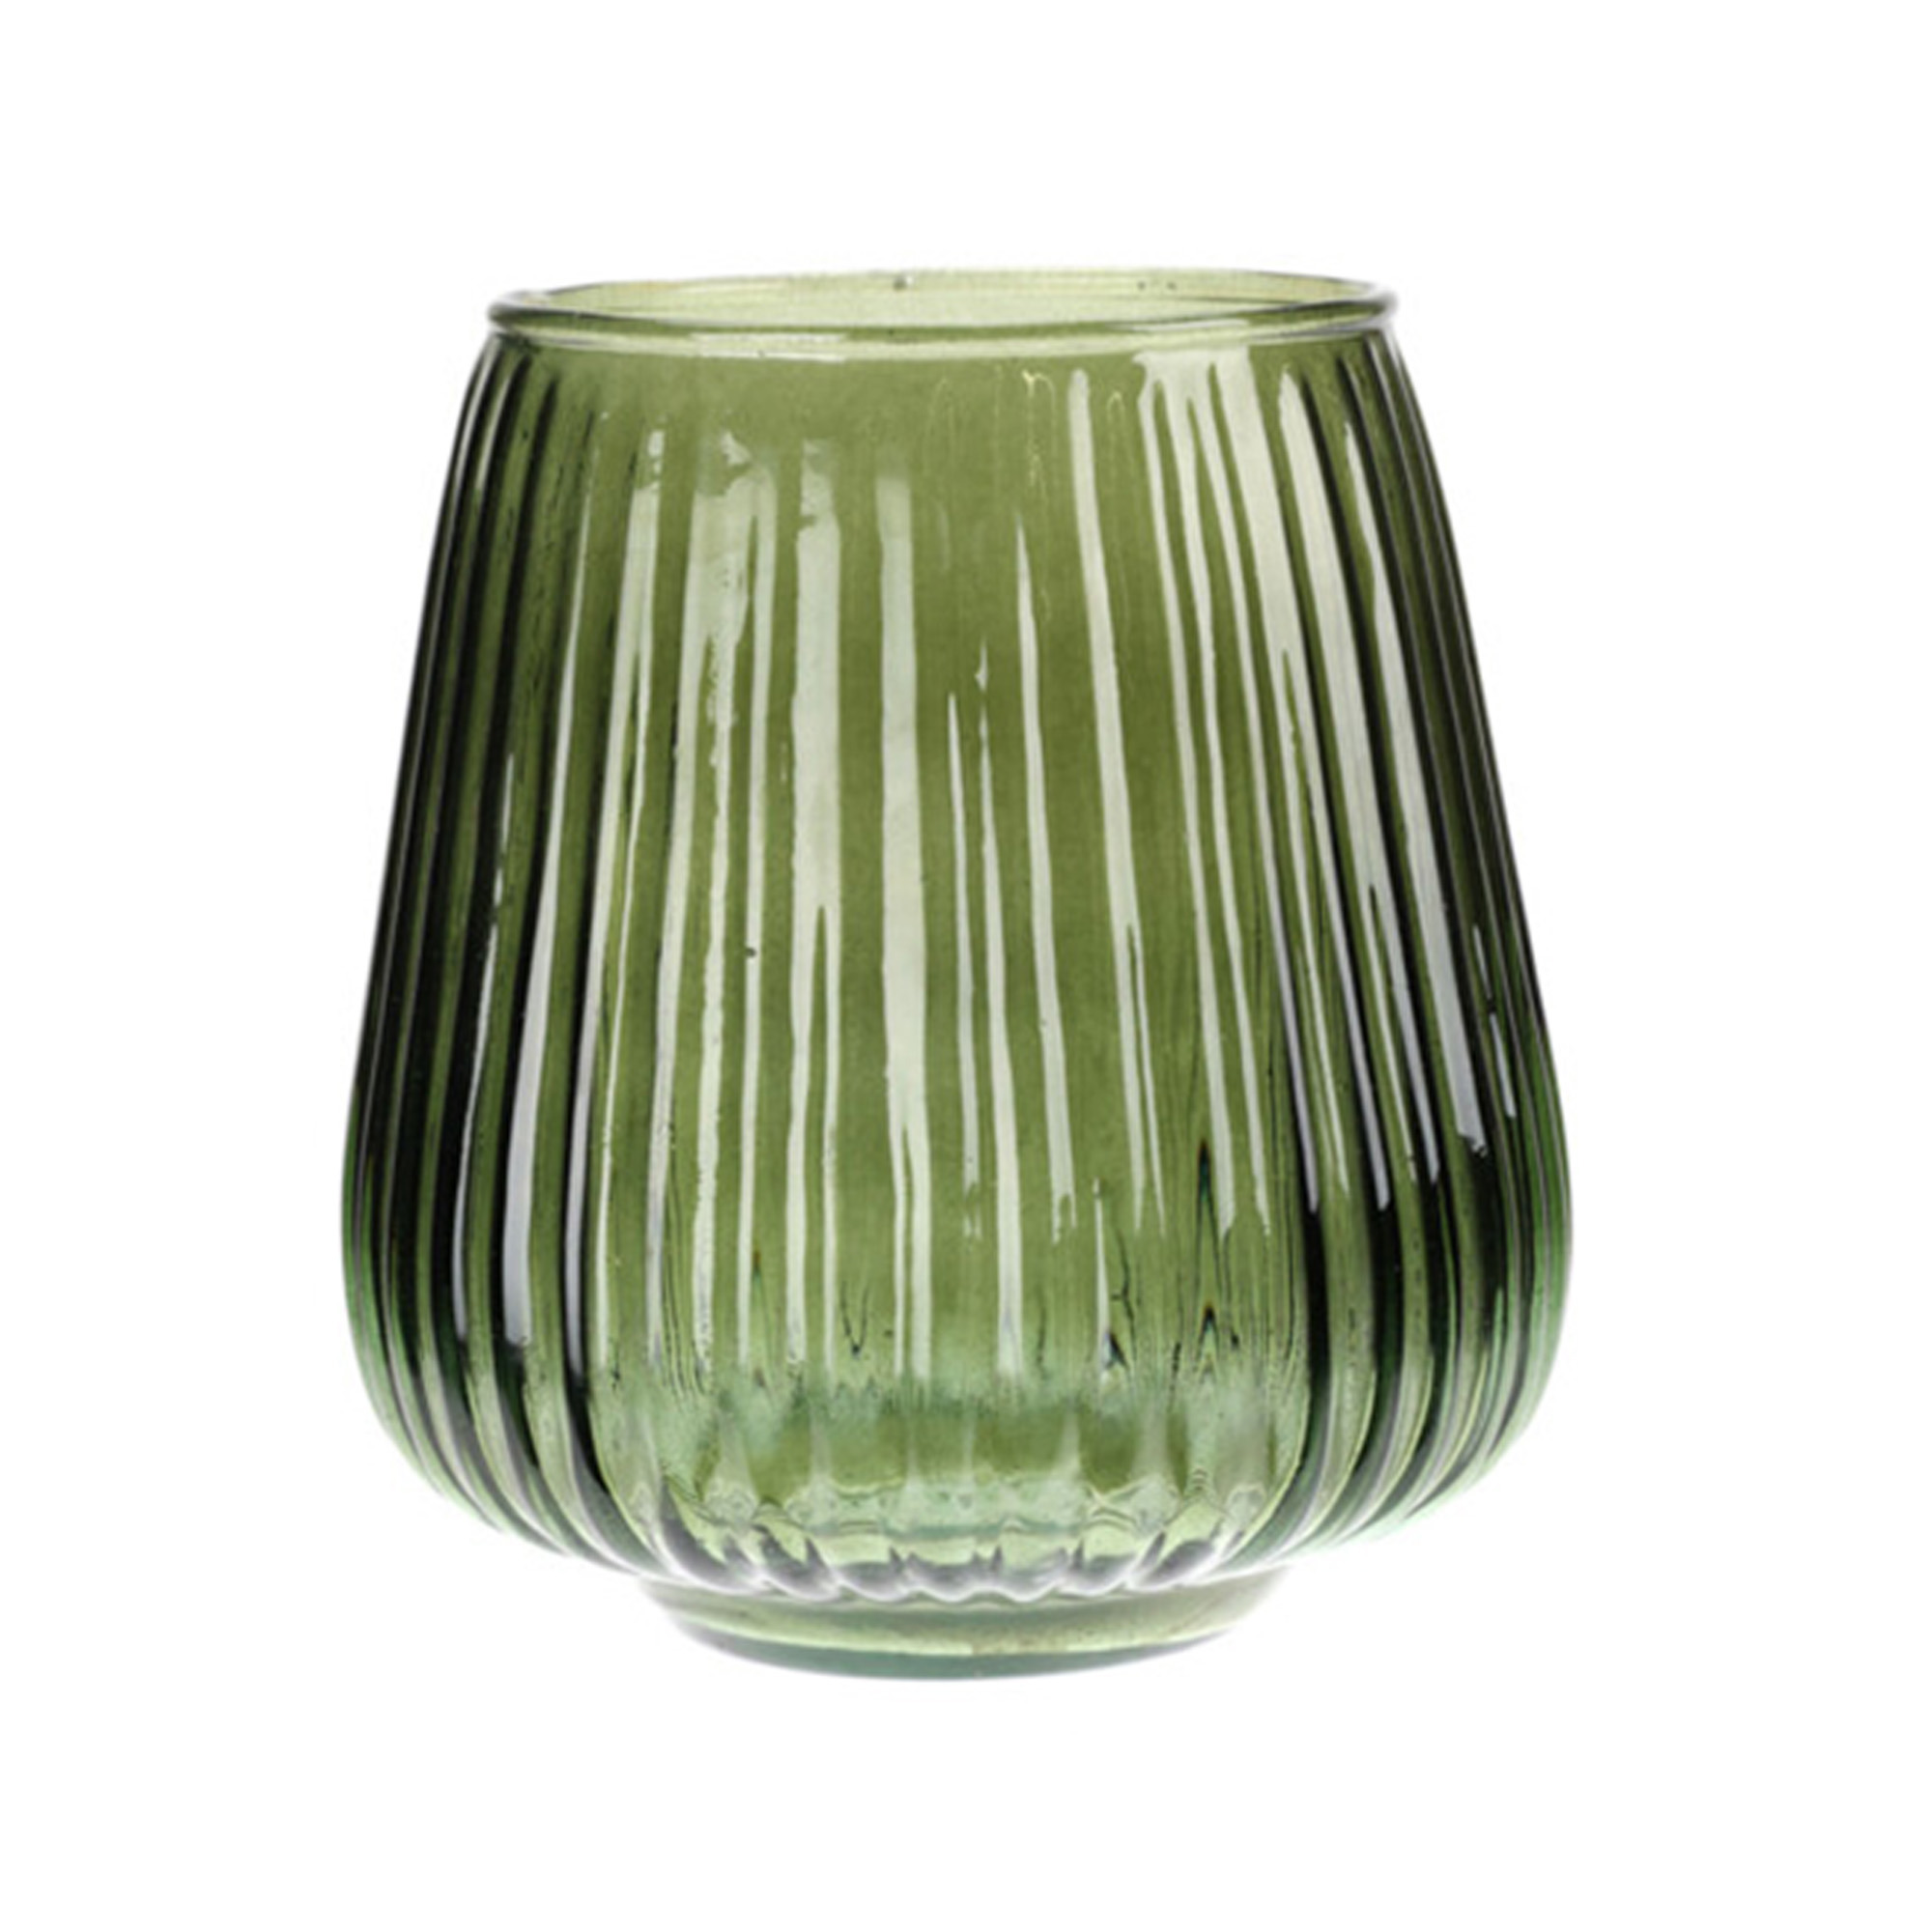 Excellent Houseware glazen vaas-bloemen vazen groen 18 x 19 cm